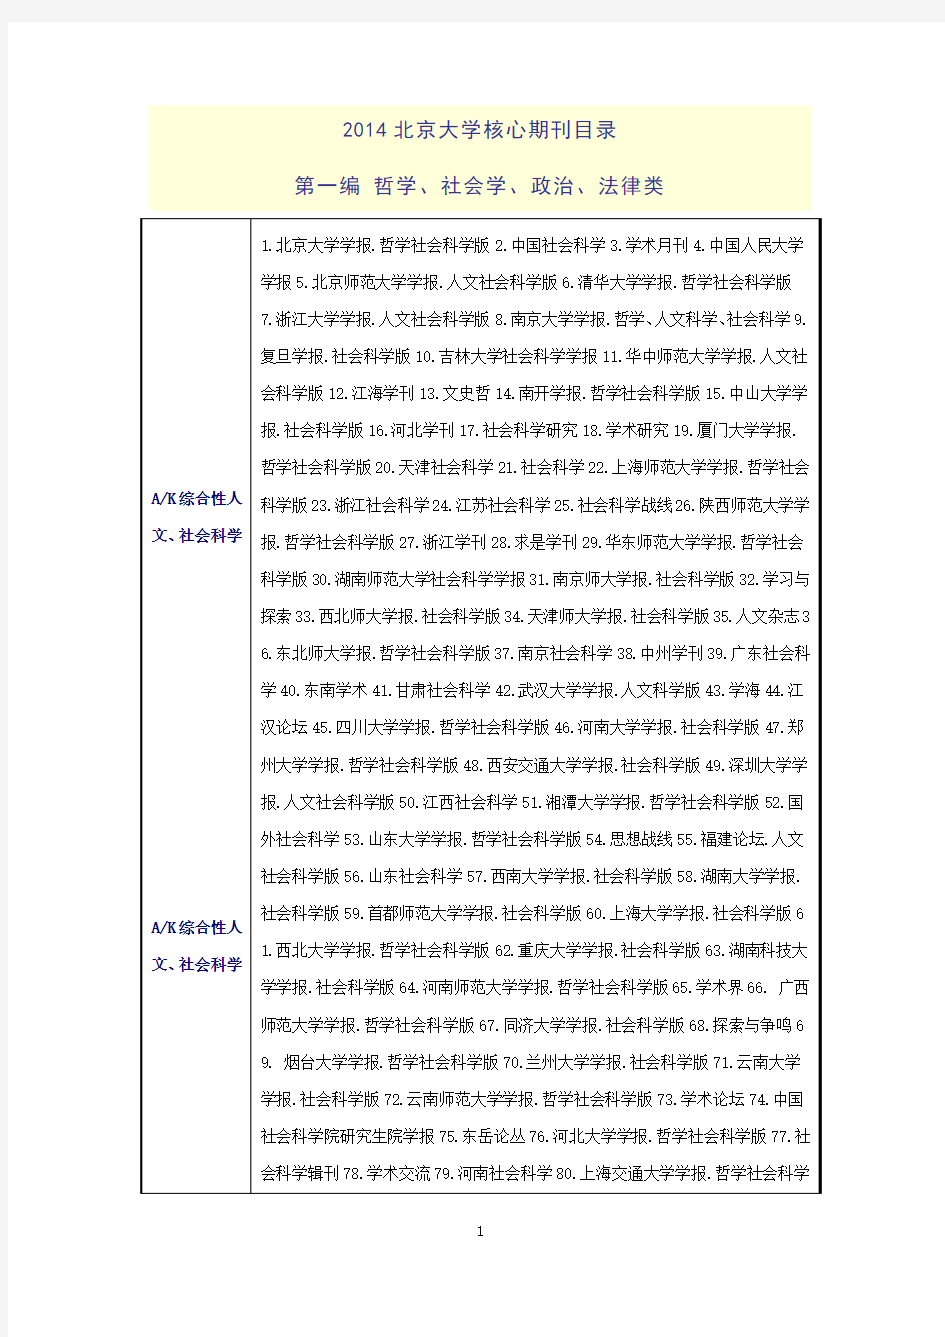 中文核心期刊要目总览(北大2014年版)